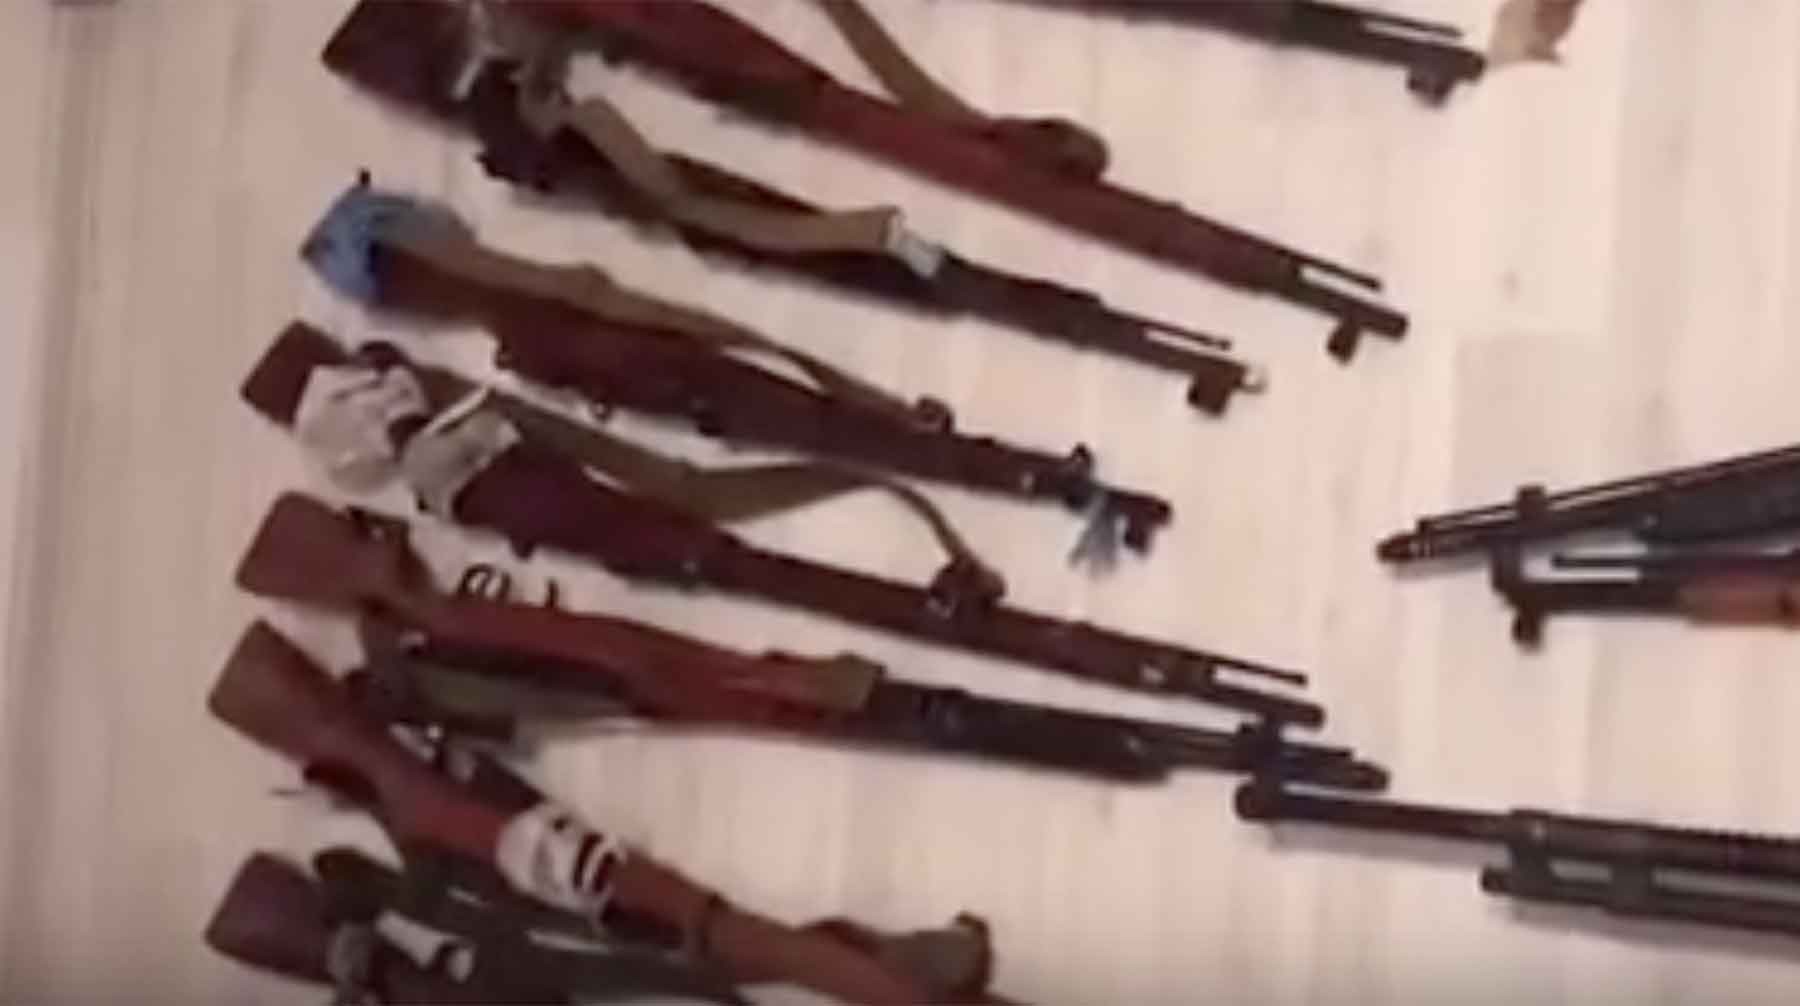 Dailystorm - Пулеметы, гранаты и тротил: ФСБ накрыла сеть «черных оружейников» в 19 регионах — видео